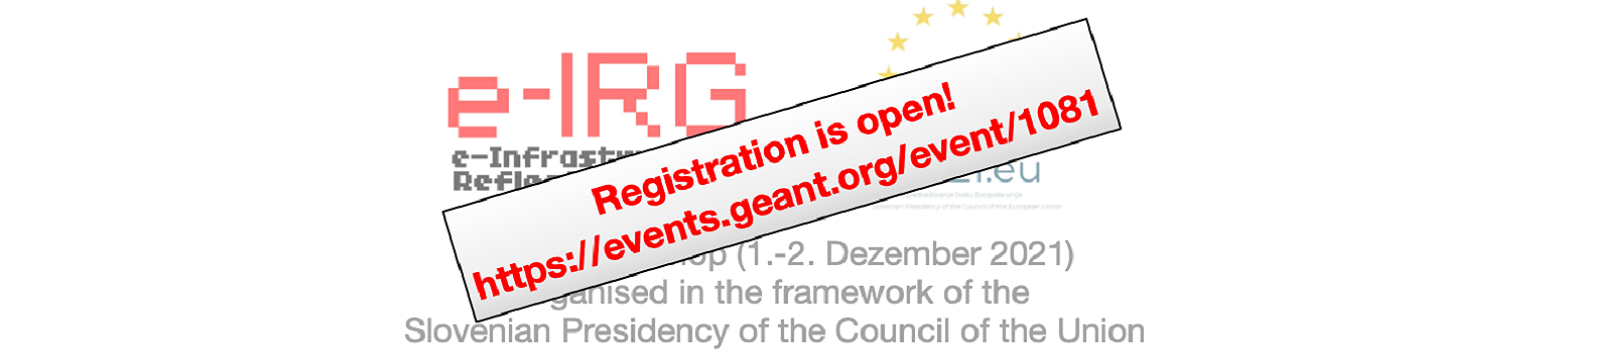 1-2 December 2021 e-IRG Workshop